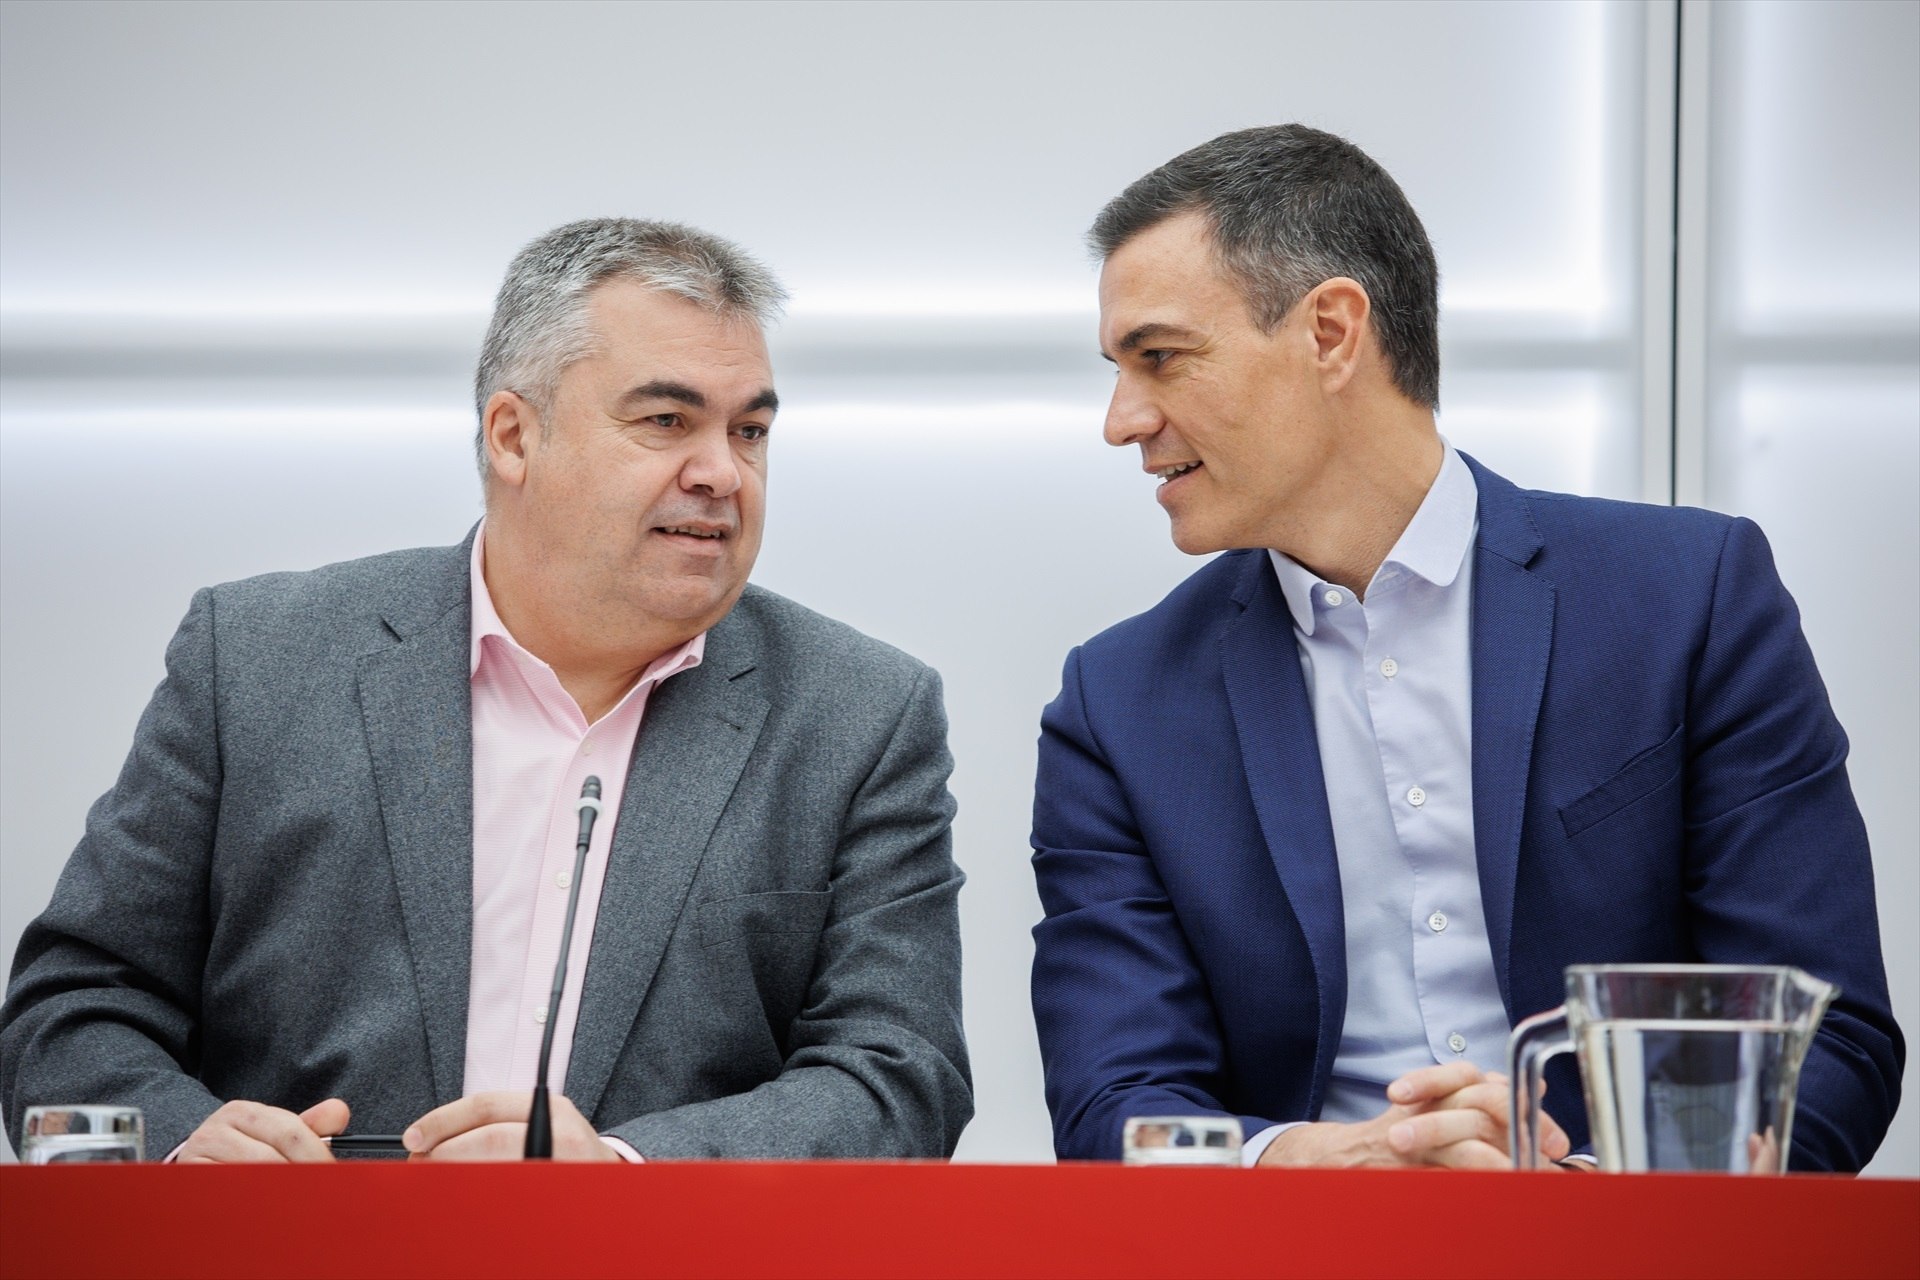 El PSOE celebra los resultados de la consulta interna: "Estamos más cerca de la investidura"